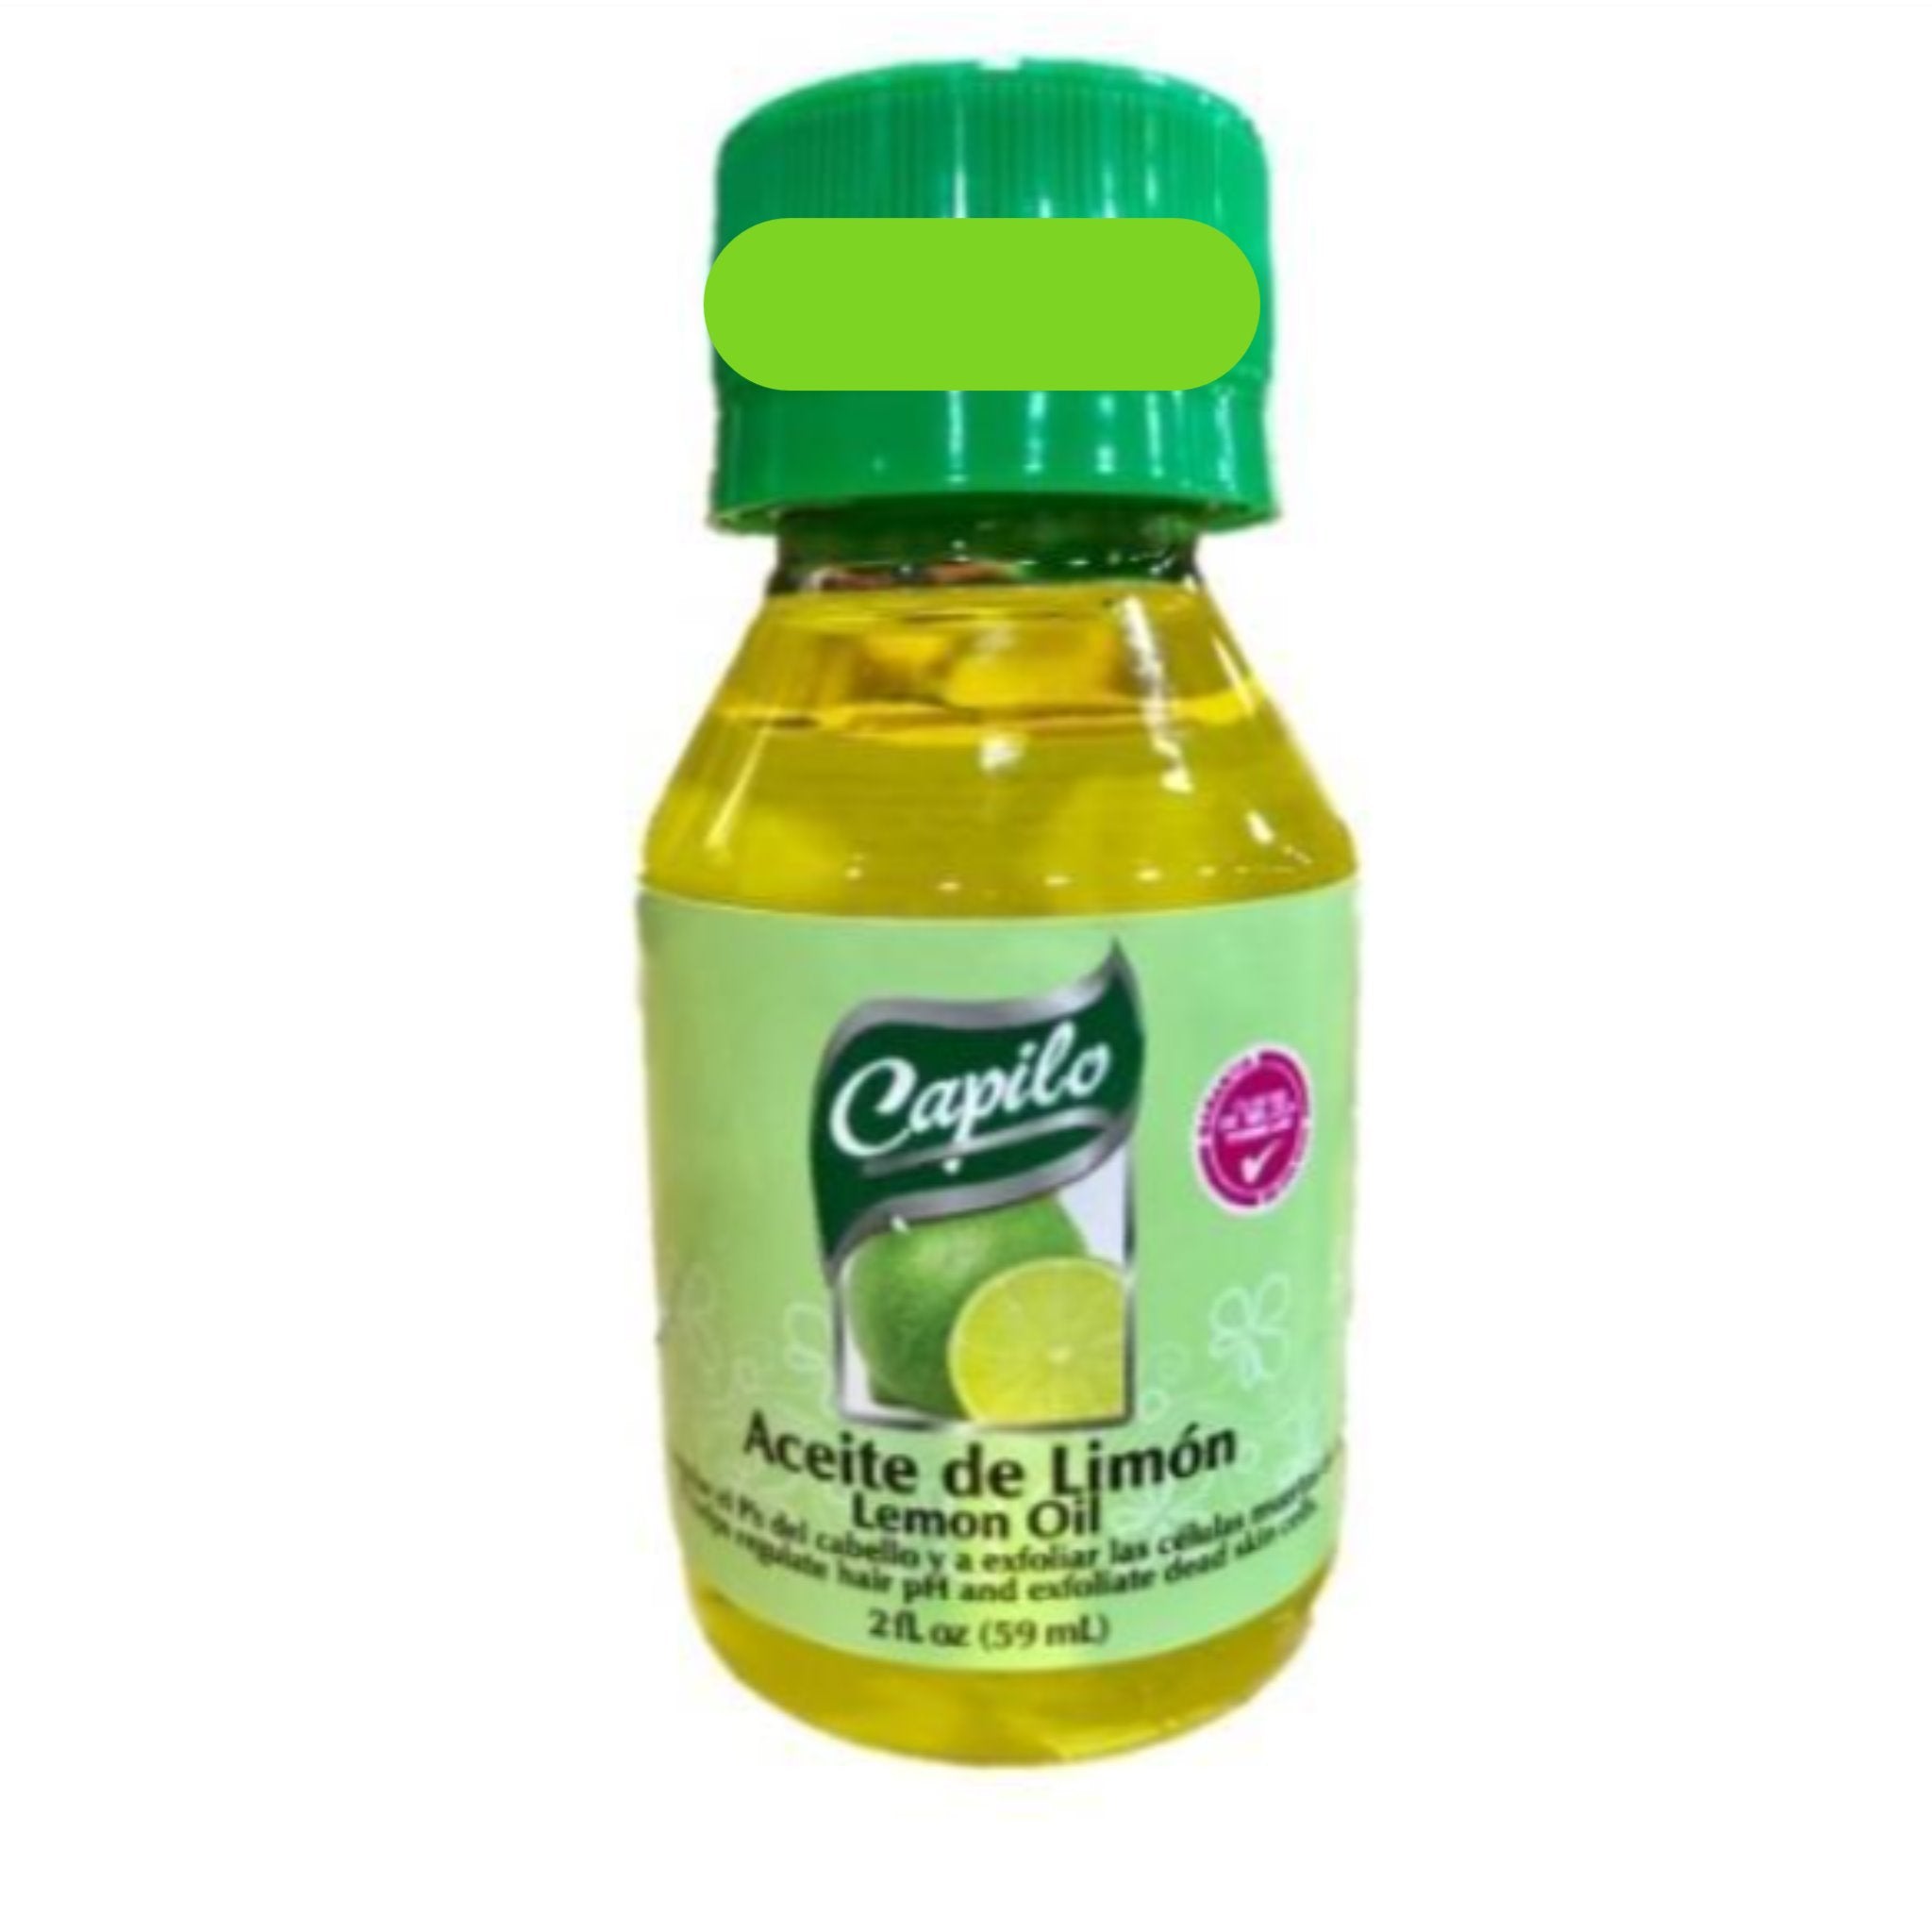 Capilo Lemon Oil 2 oz